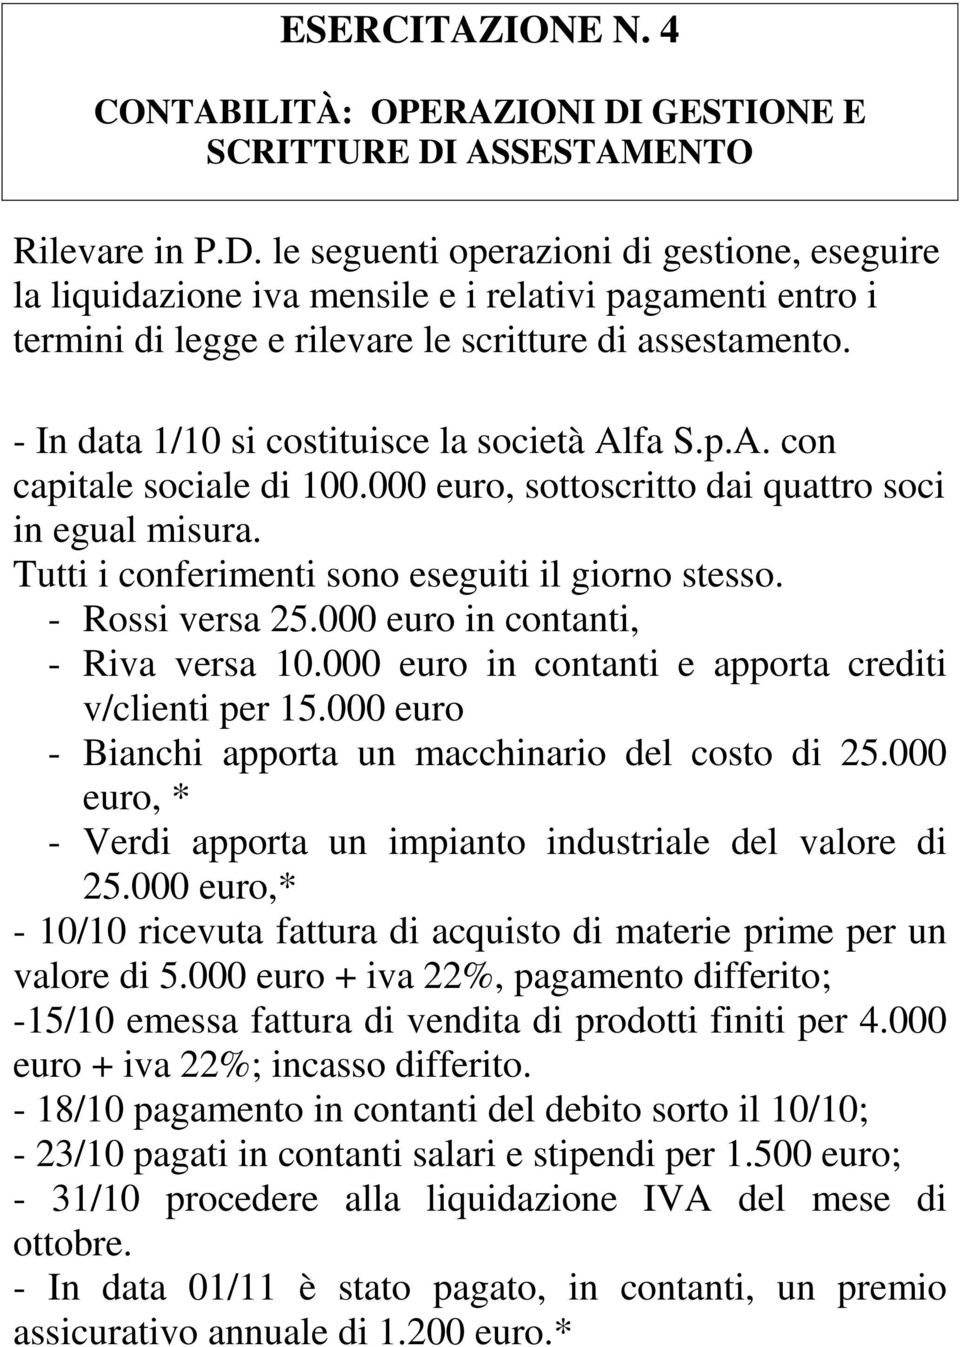 - In data 1/10 si costituisce la società Alfa S.p.A. con capitale sociale di 100.000 euro, sottoscritto dai quattro soci in egual misura. Tutti i conferimenti sono eseguiti il giorno stesso.